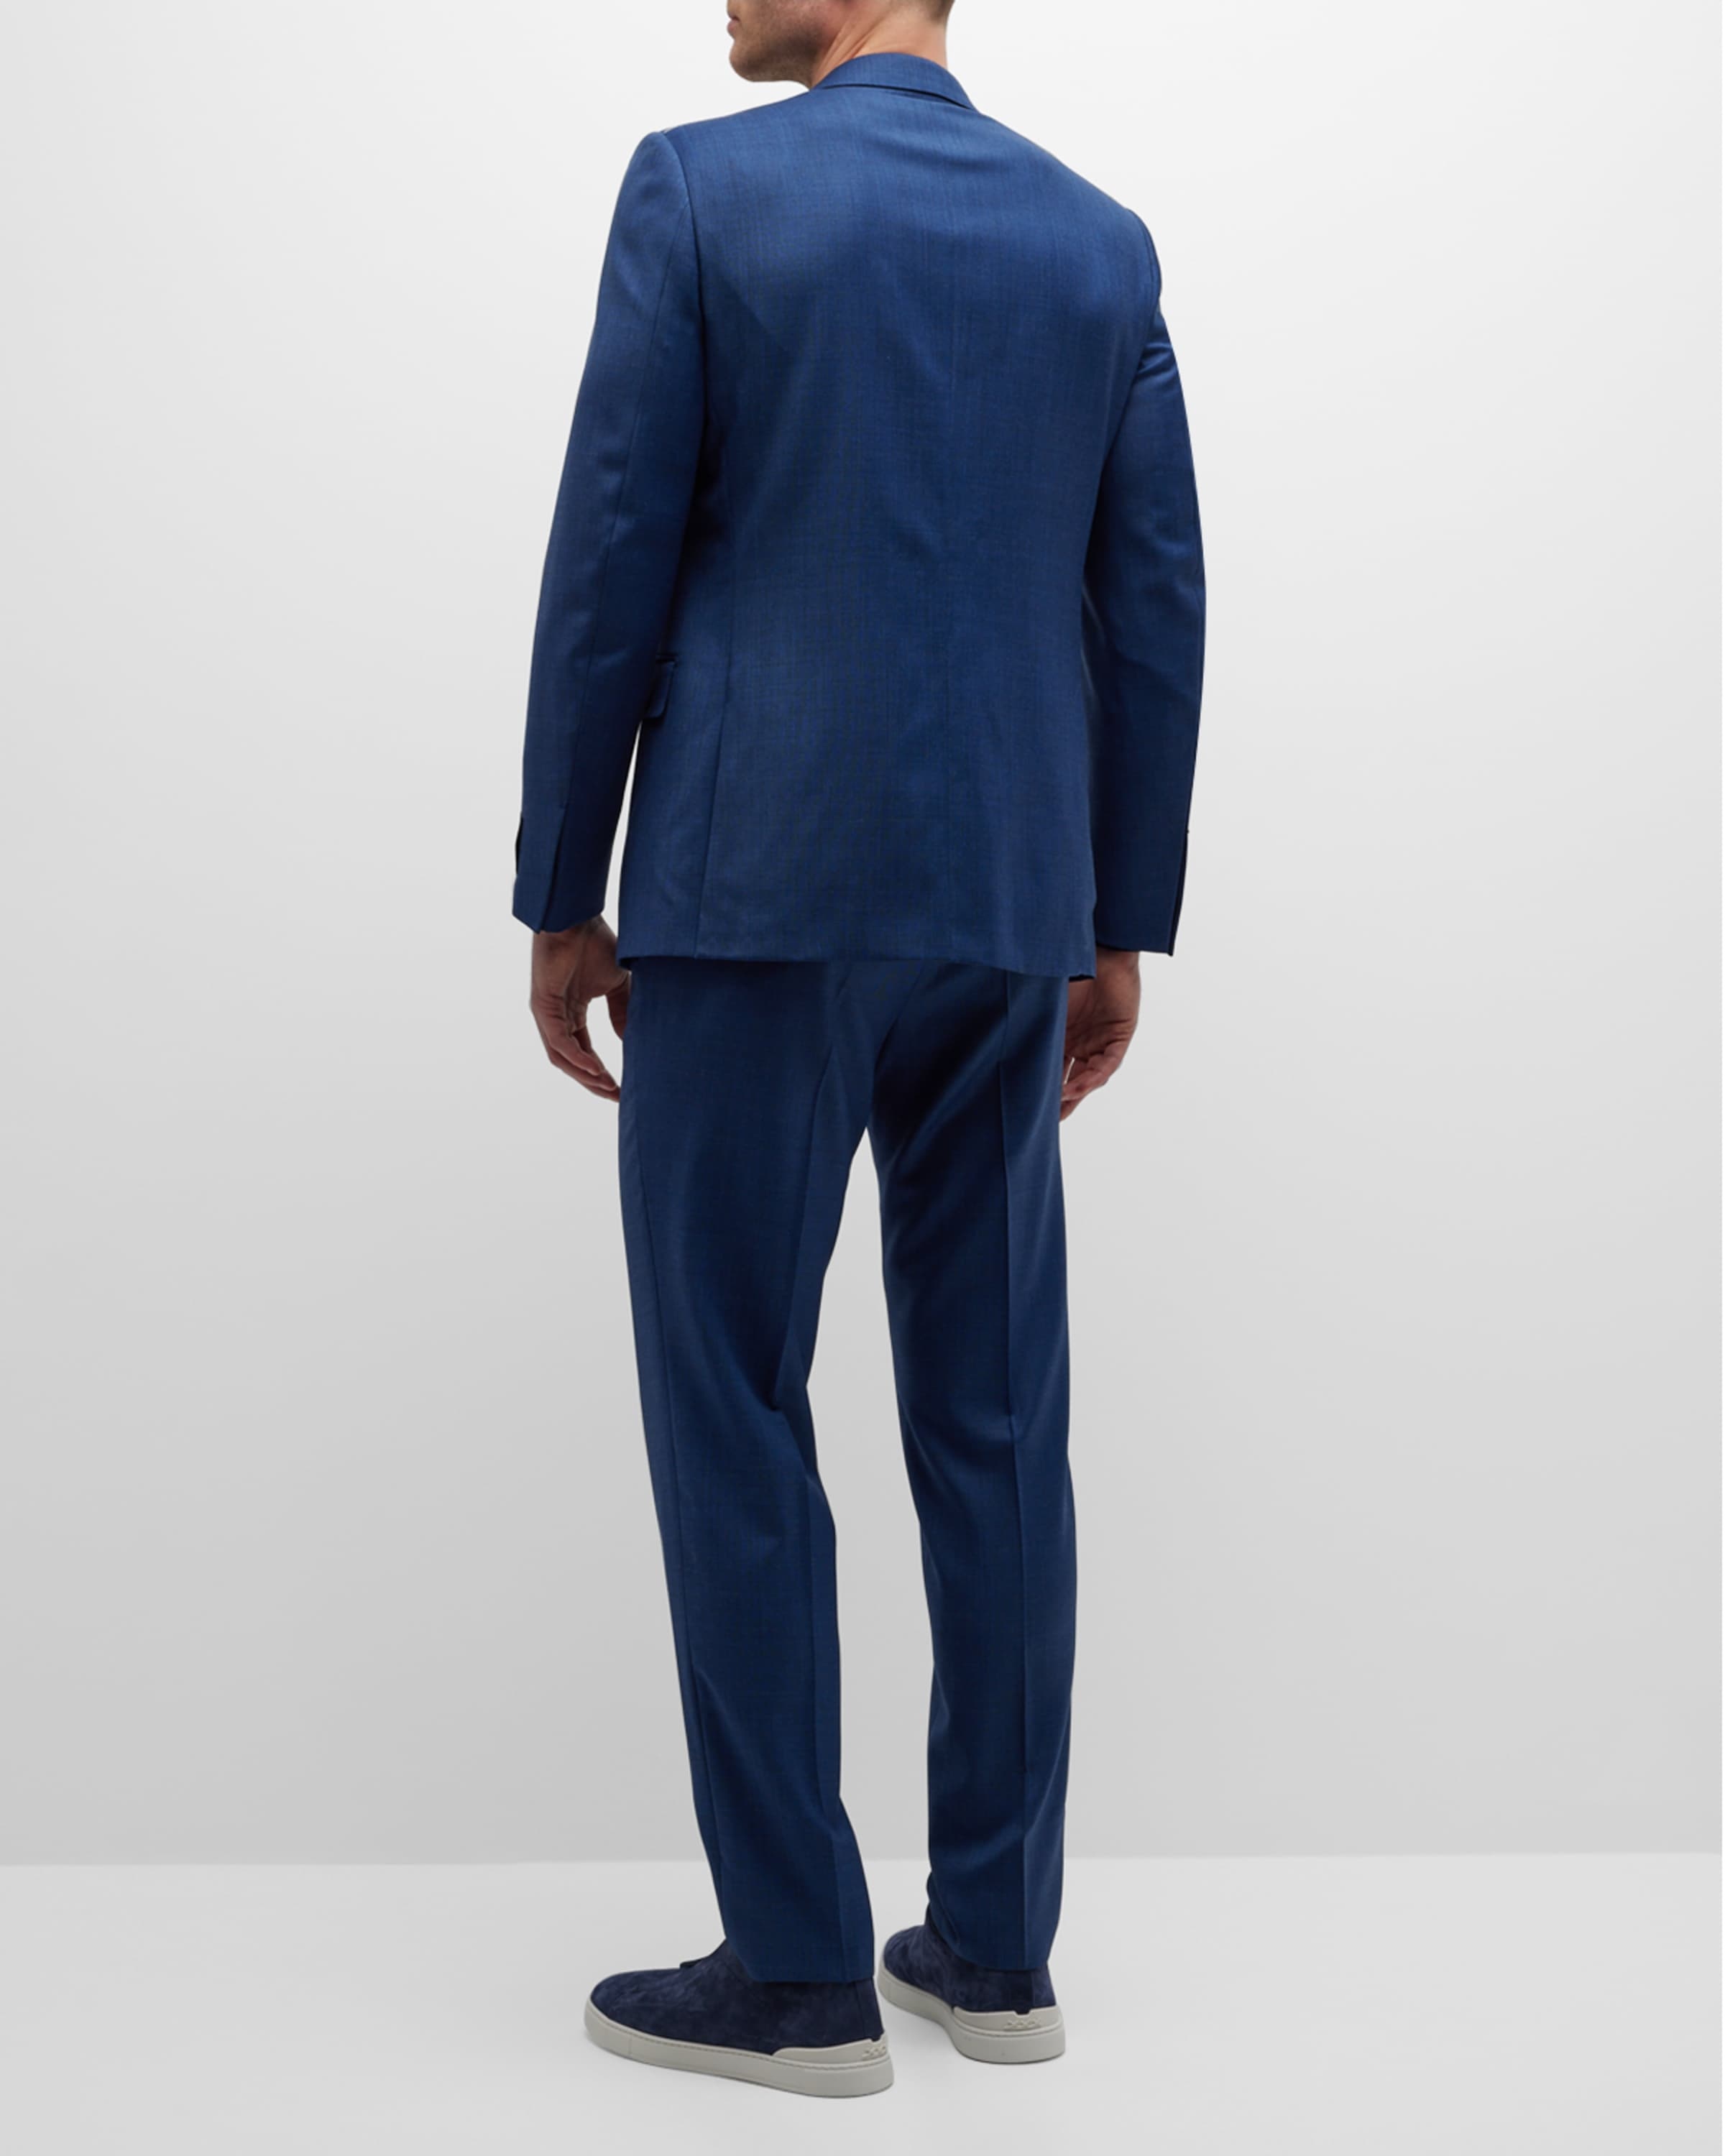 Men's Solid Wool Classic-Fit Suit - 3